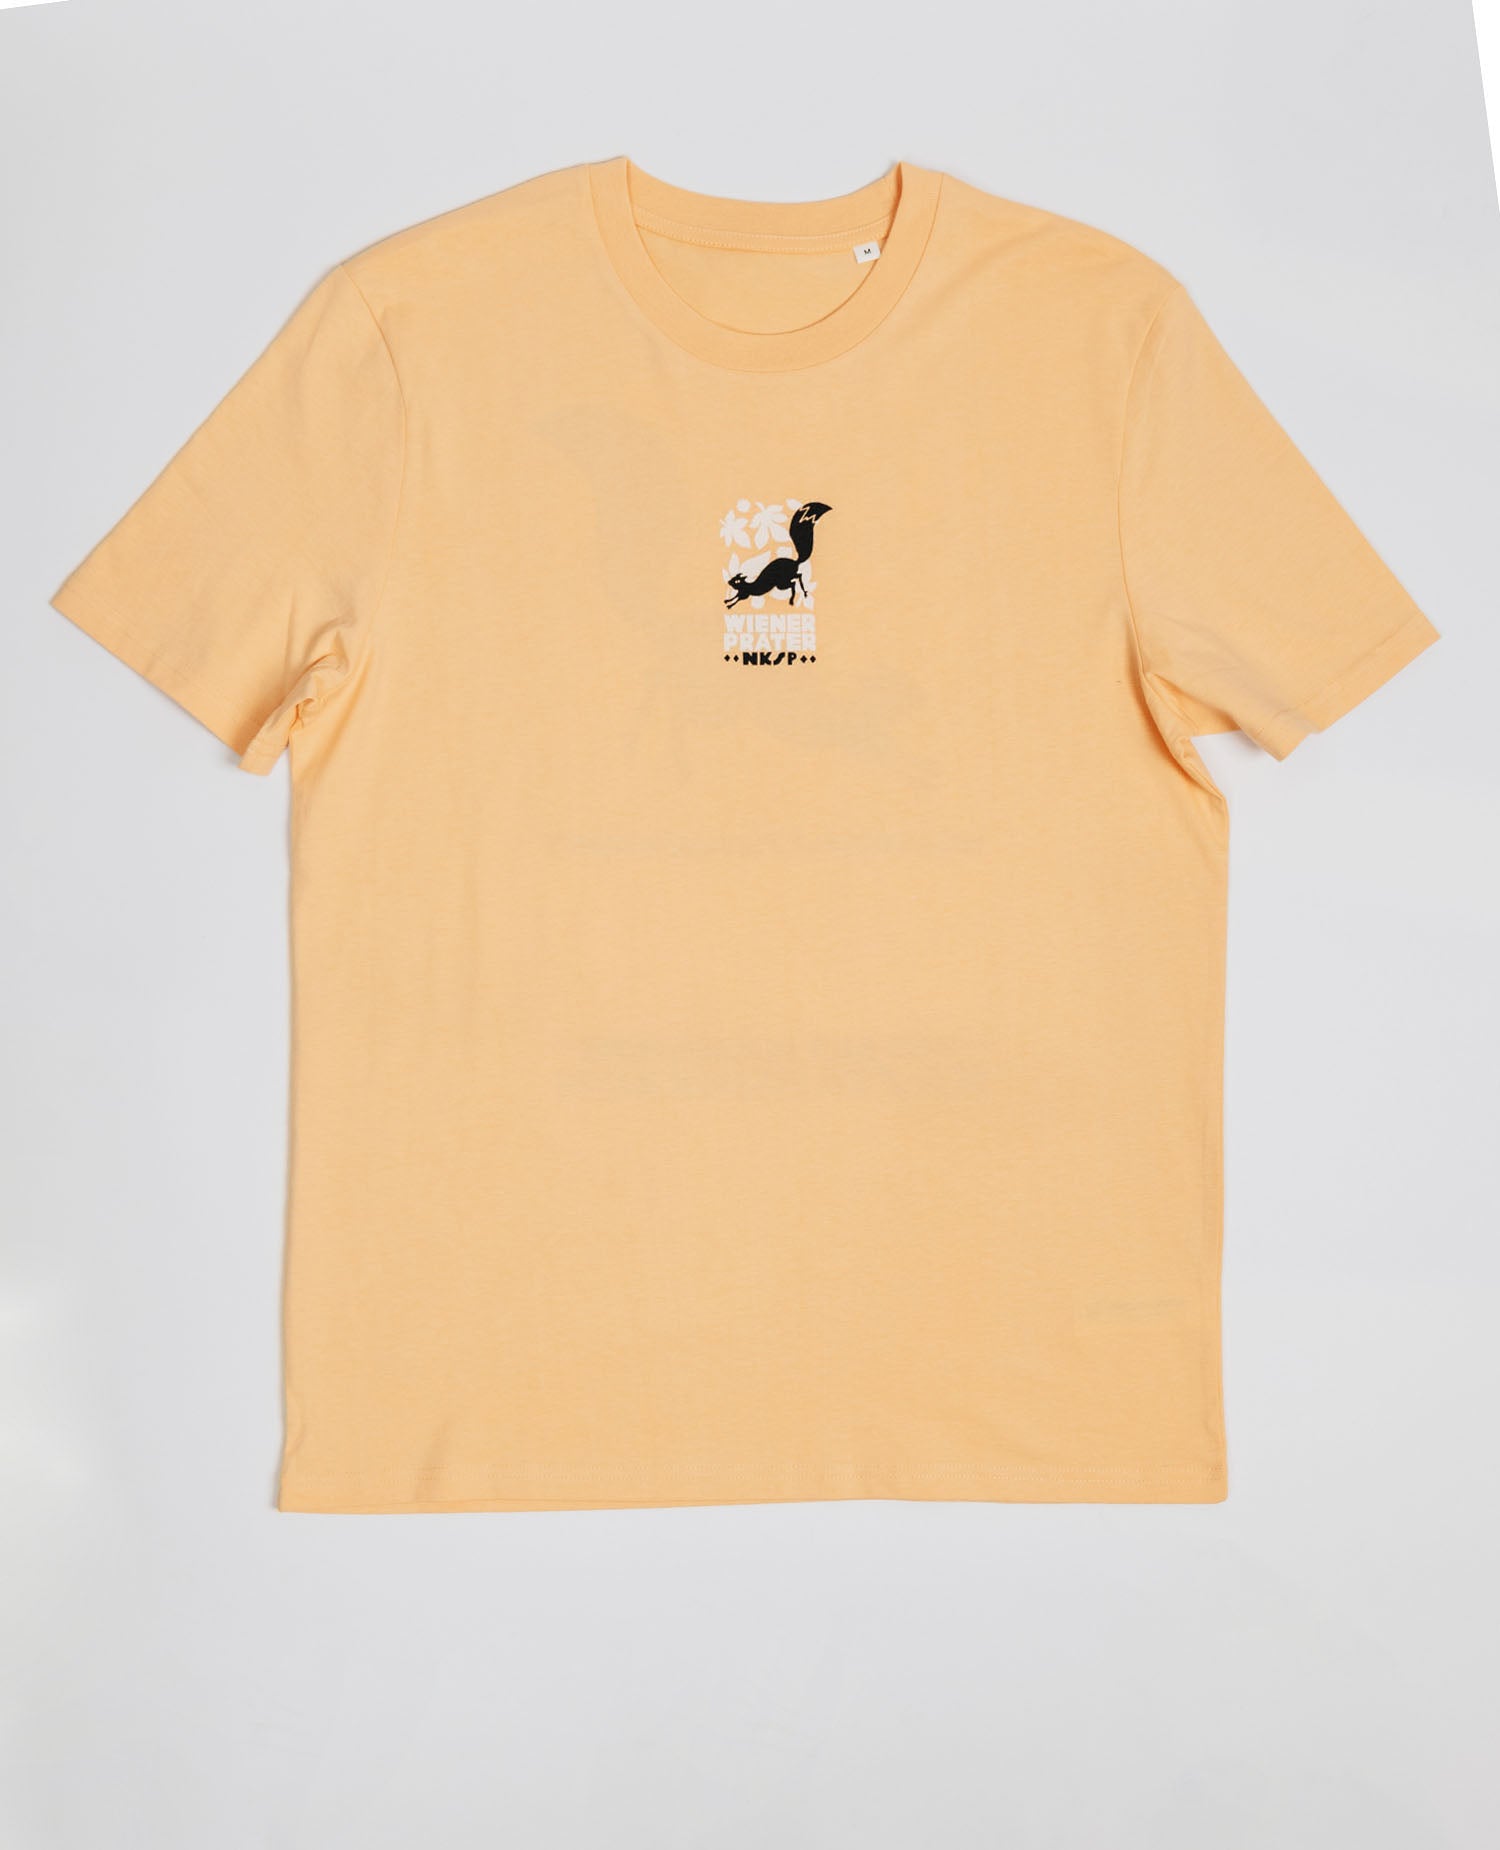 Wiener Prater T-Shirt Gelb